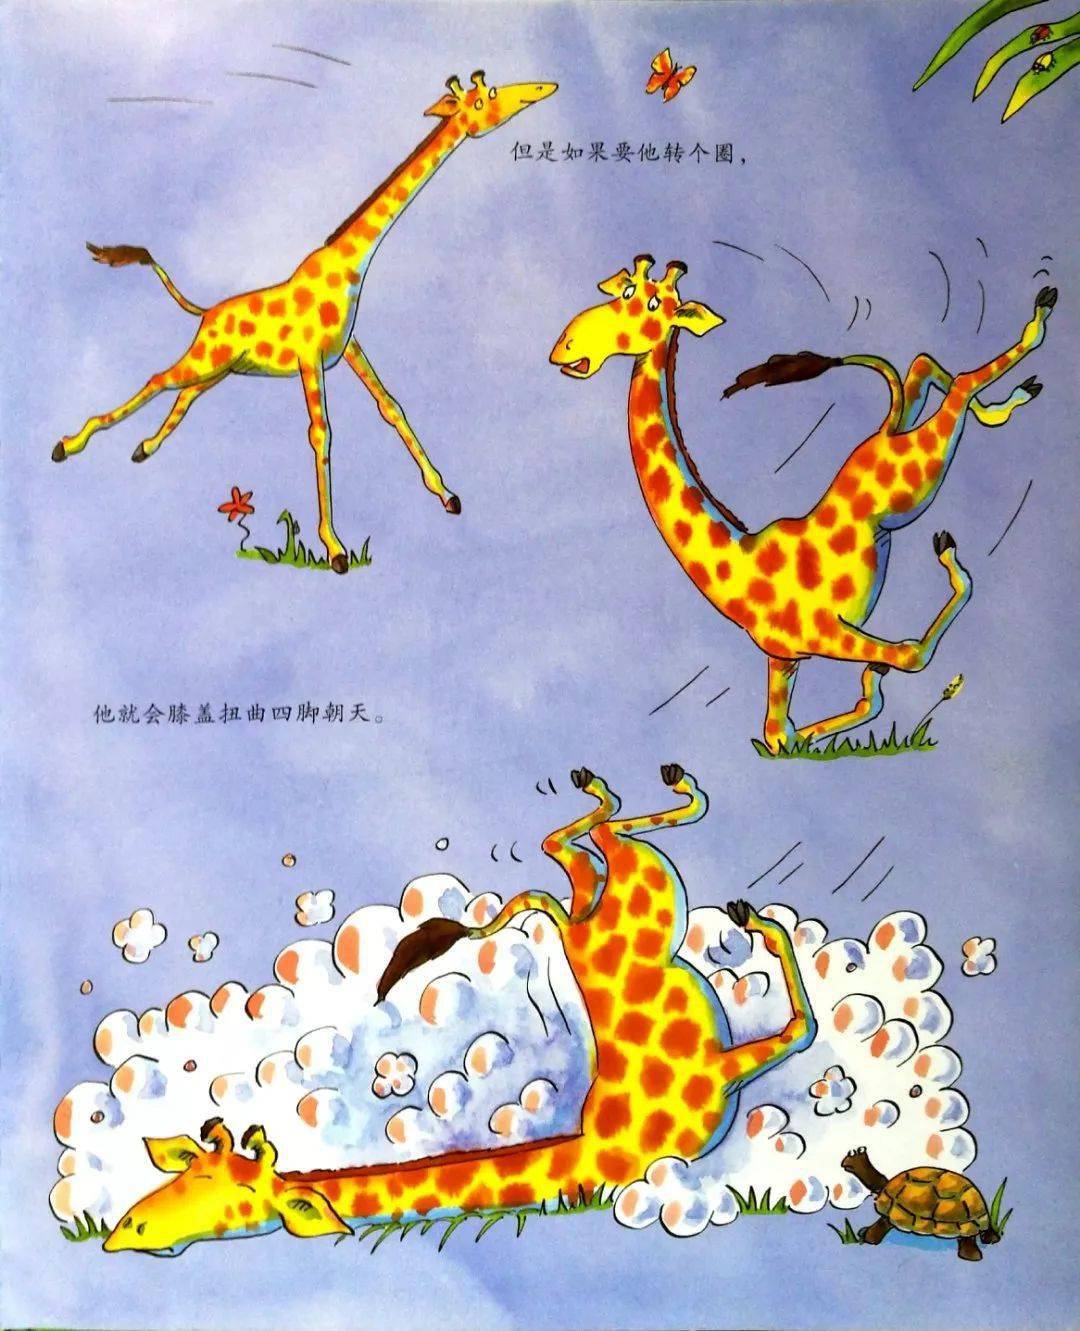 有声故事 | 《长颈鹿不会跳舞》,让孩子充满自信,勇敢